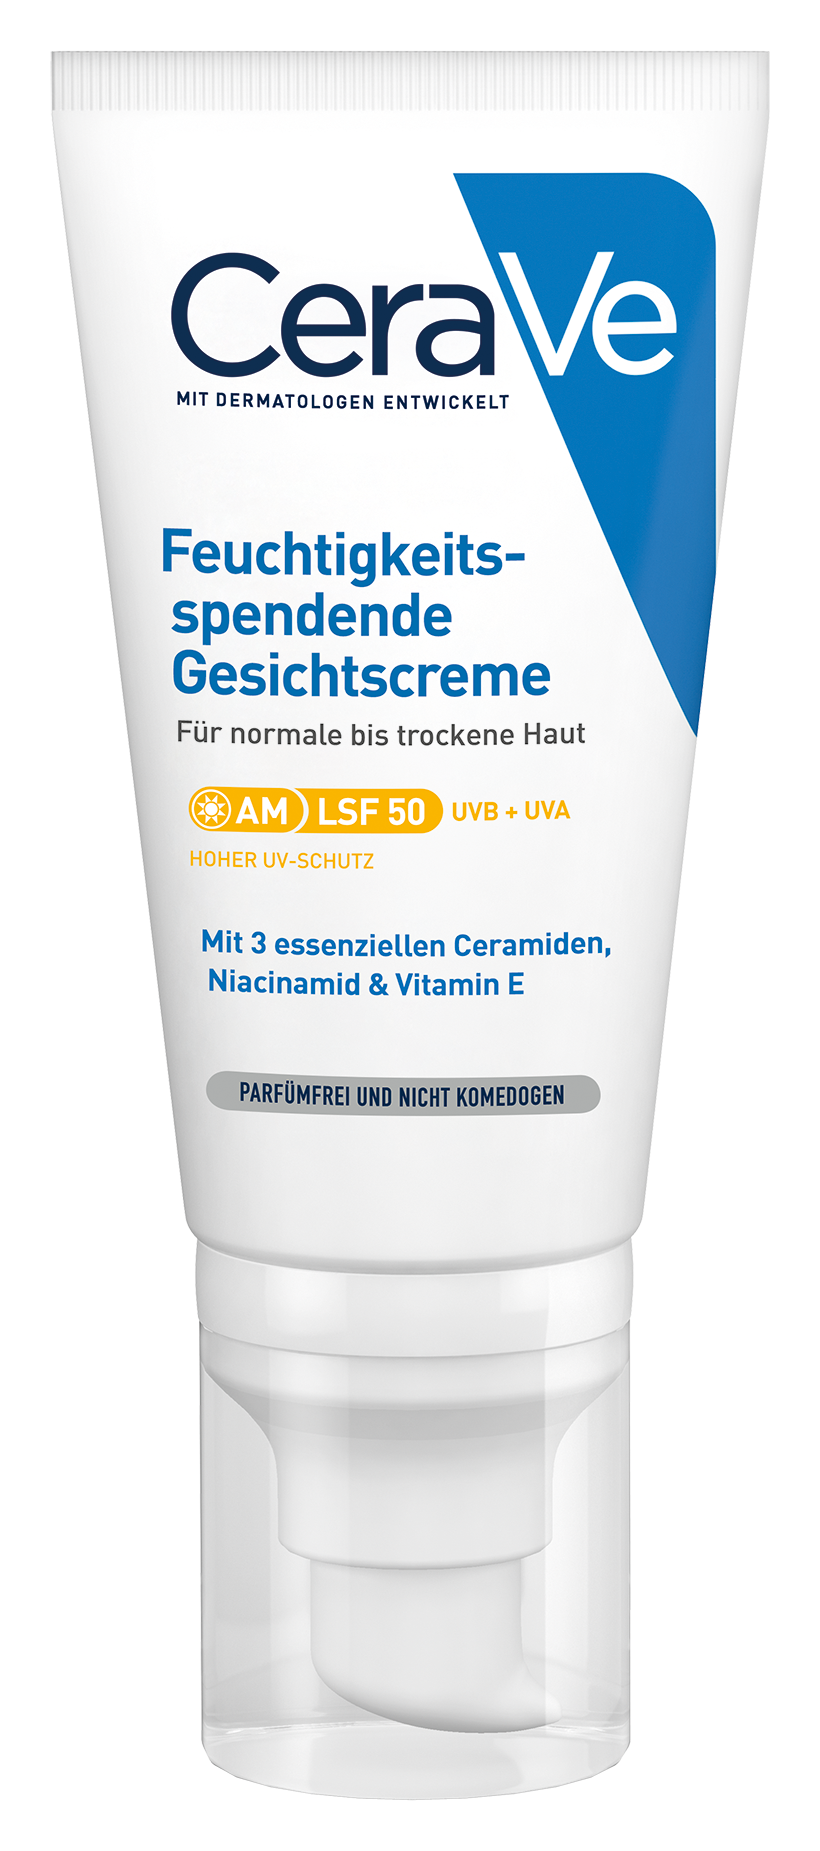 CeraVe Feuchtigkeitsspendende Gesichtscreme mit LSF 50 (52 ml)